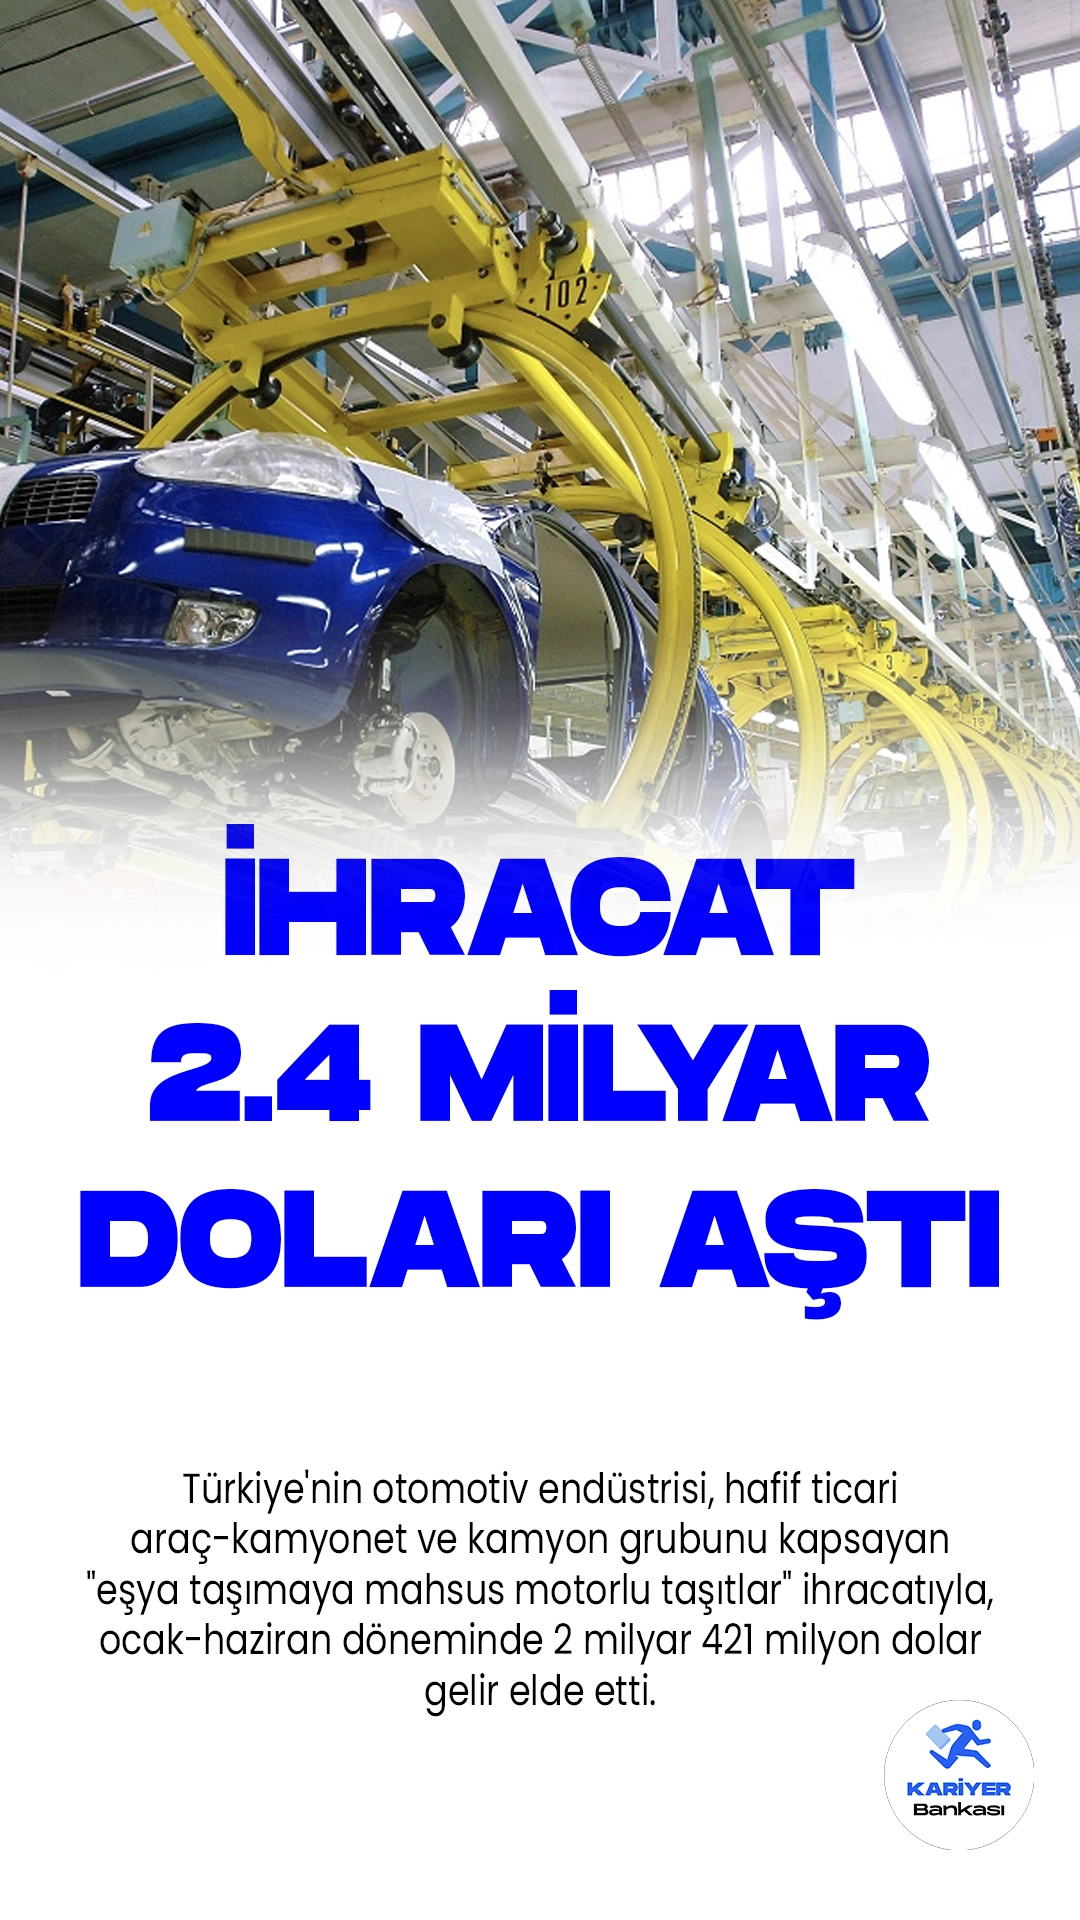 Türkiye Otomotiv Endüstrisi İhracatı Yılın İlk Yarısında 2.4 Milyar Doları Aştı.Türkiye'nin otomotiv endüstrisi, hafif ticari araç-kamyonet ve kamyon grubunu kapsayan "eşya taşımaya mahsus motorlu taşıtlar" ihracatıyla, ocak-haziran döneminde 2 milyar 421 milyon dolar gelir elde etti.